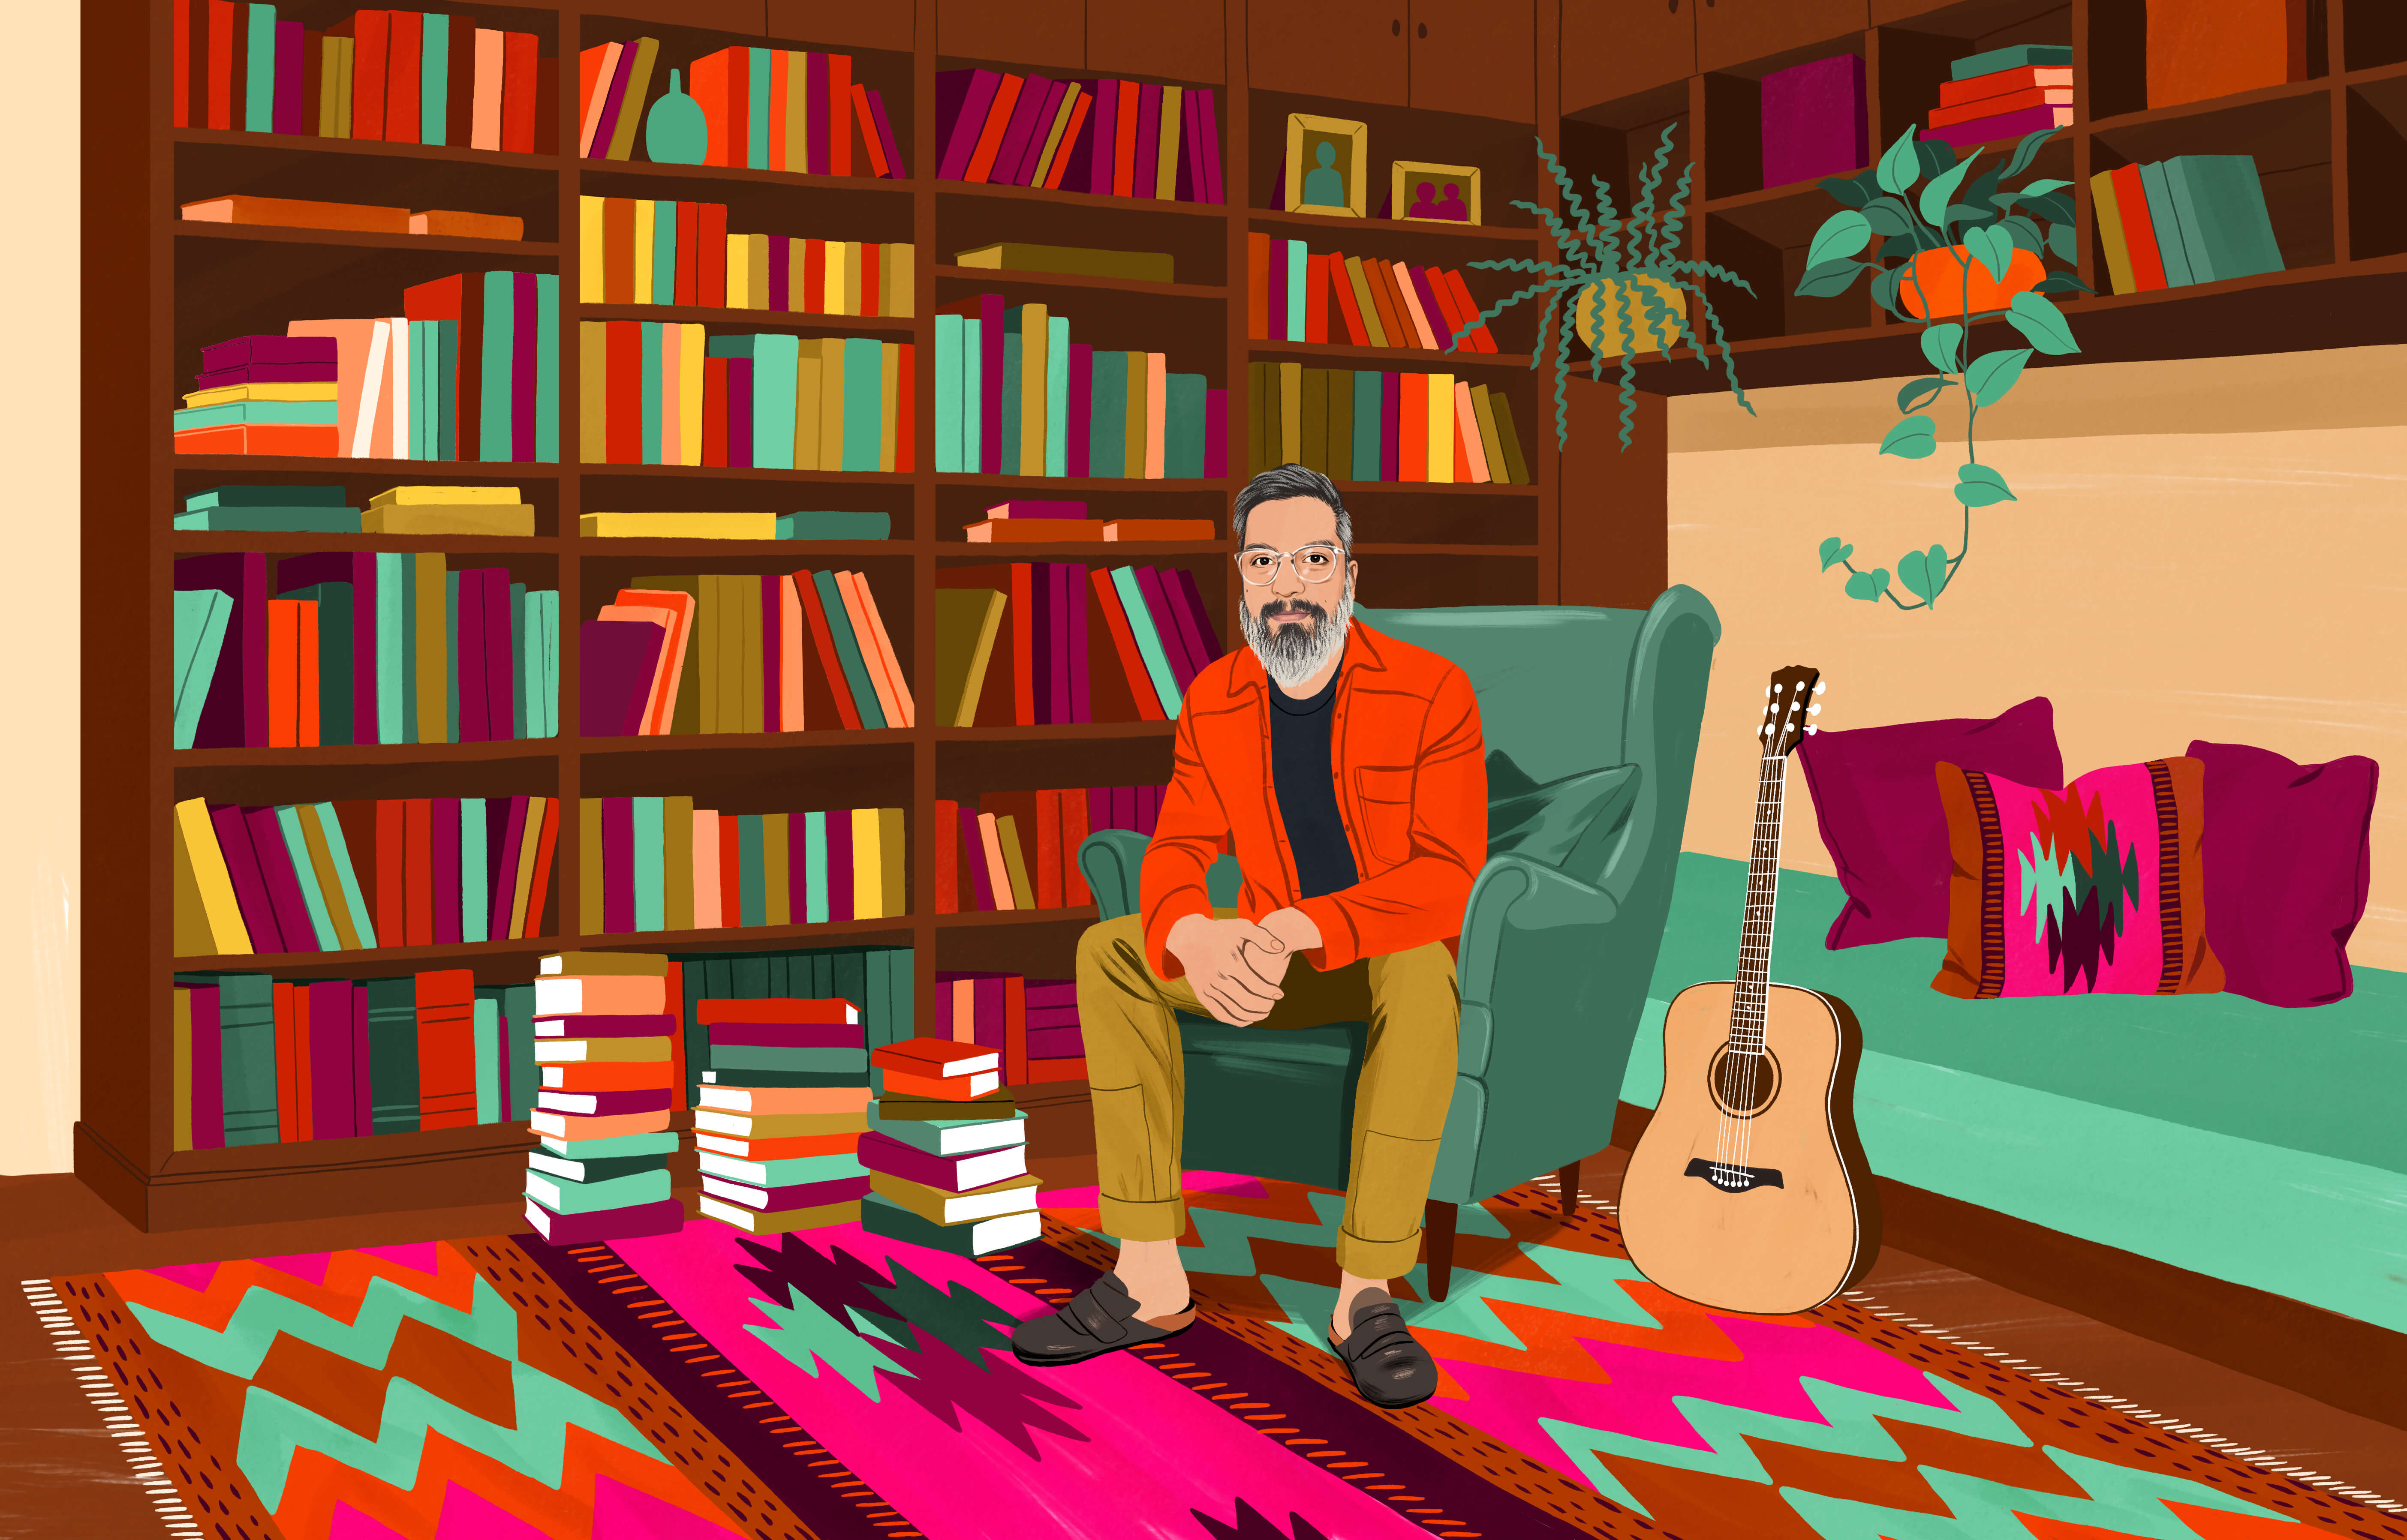 JP sitter i en fåtölj omgiven av böcker i bokhyllor och i höga travar på golvet. Golvet täcks av en traditionell chilensk matta med ett färgglatt mönster. En akustisk gitarr finns på armlängds armstånd.